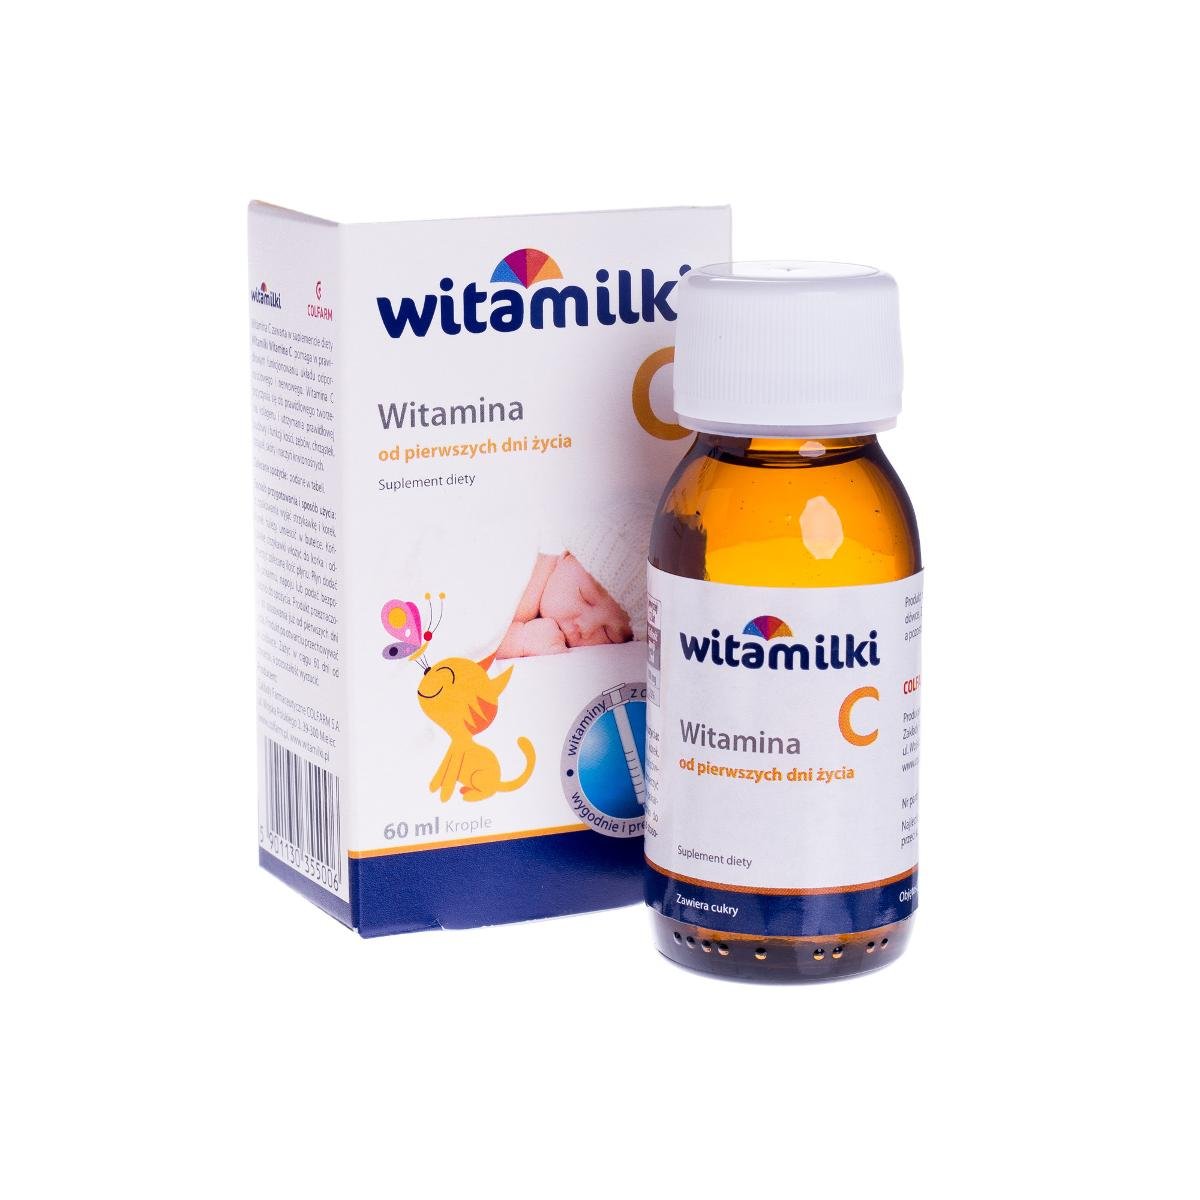 Фото - Вітаміни й мінерали Witamilki Witamina C. suplement diety, 60 ml